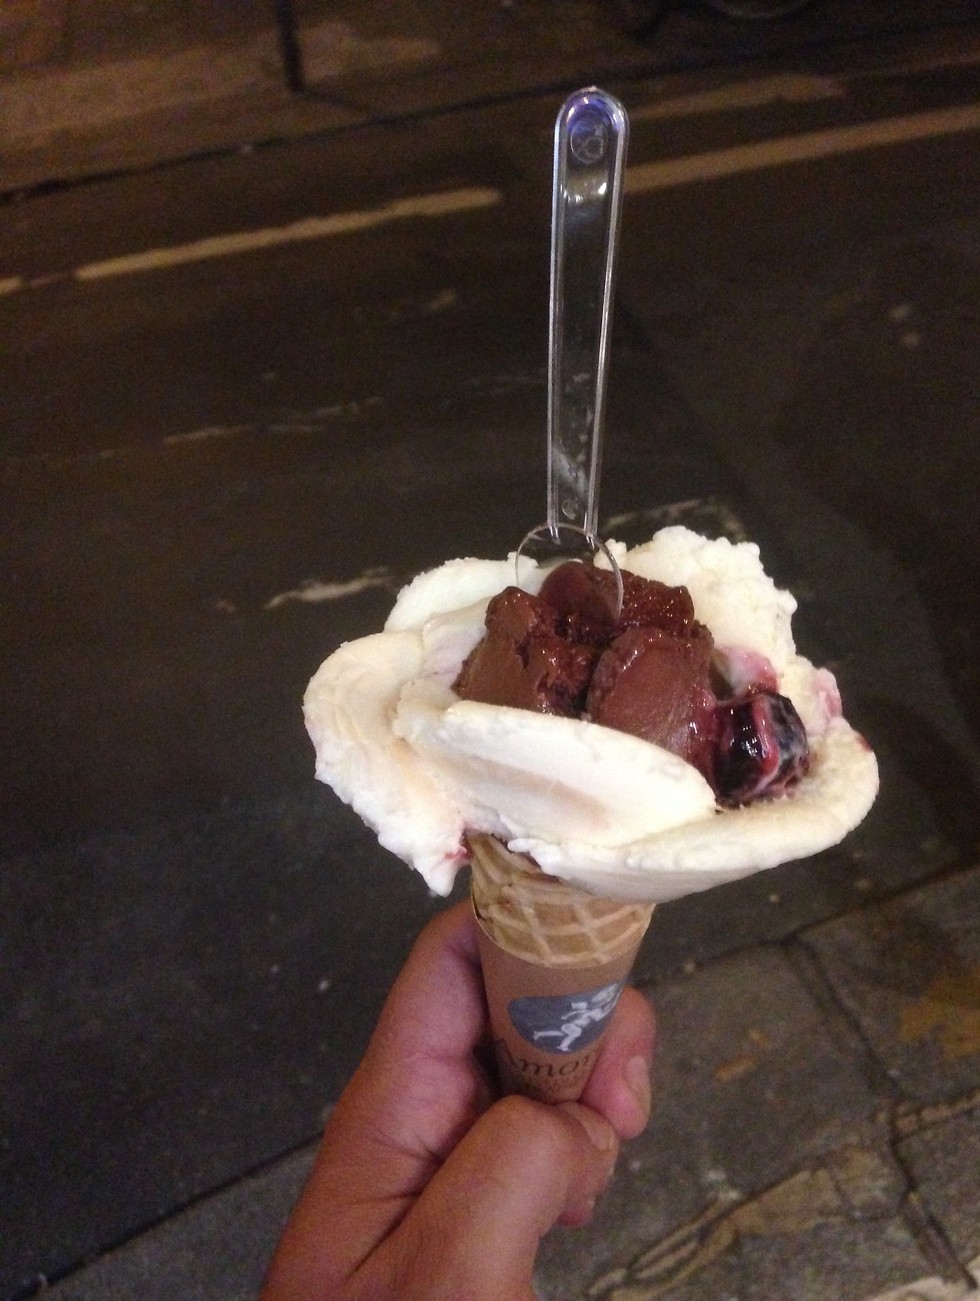 מי שהיה ילד טוב בג'ונגל מקבל גלידה מגניבה בפריז (צילום: ניר פדרבוש) (צילום: ניר פדרבוש)